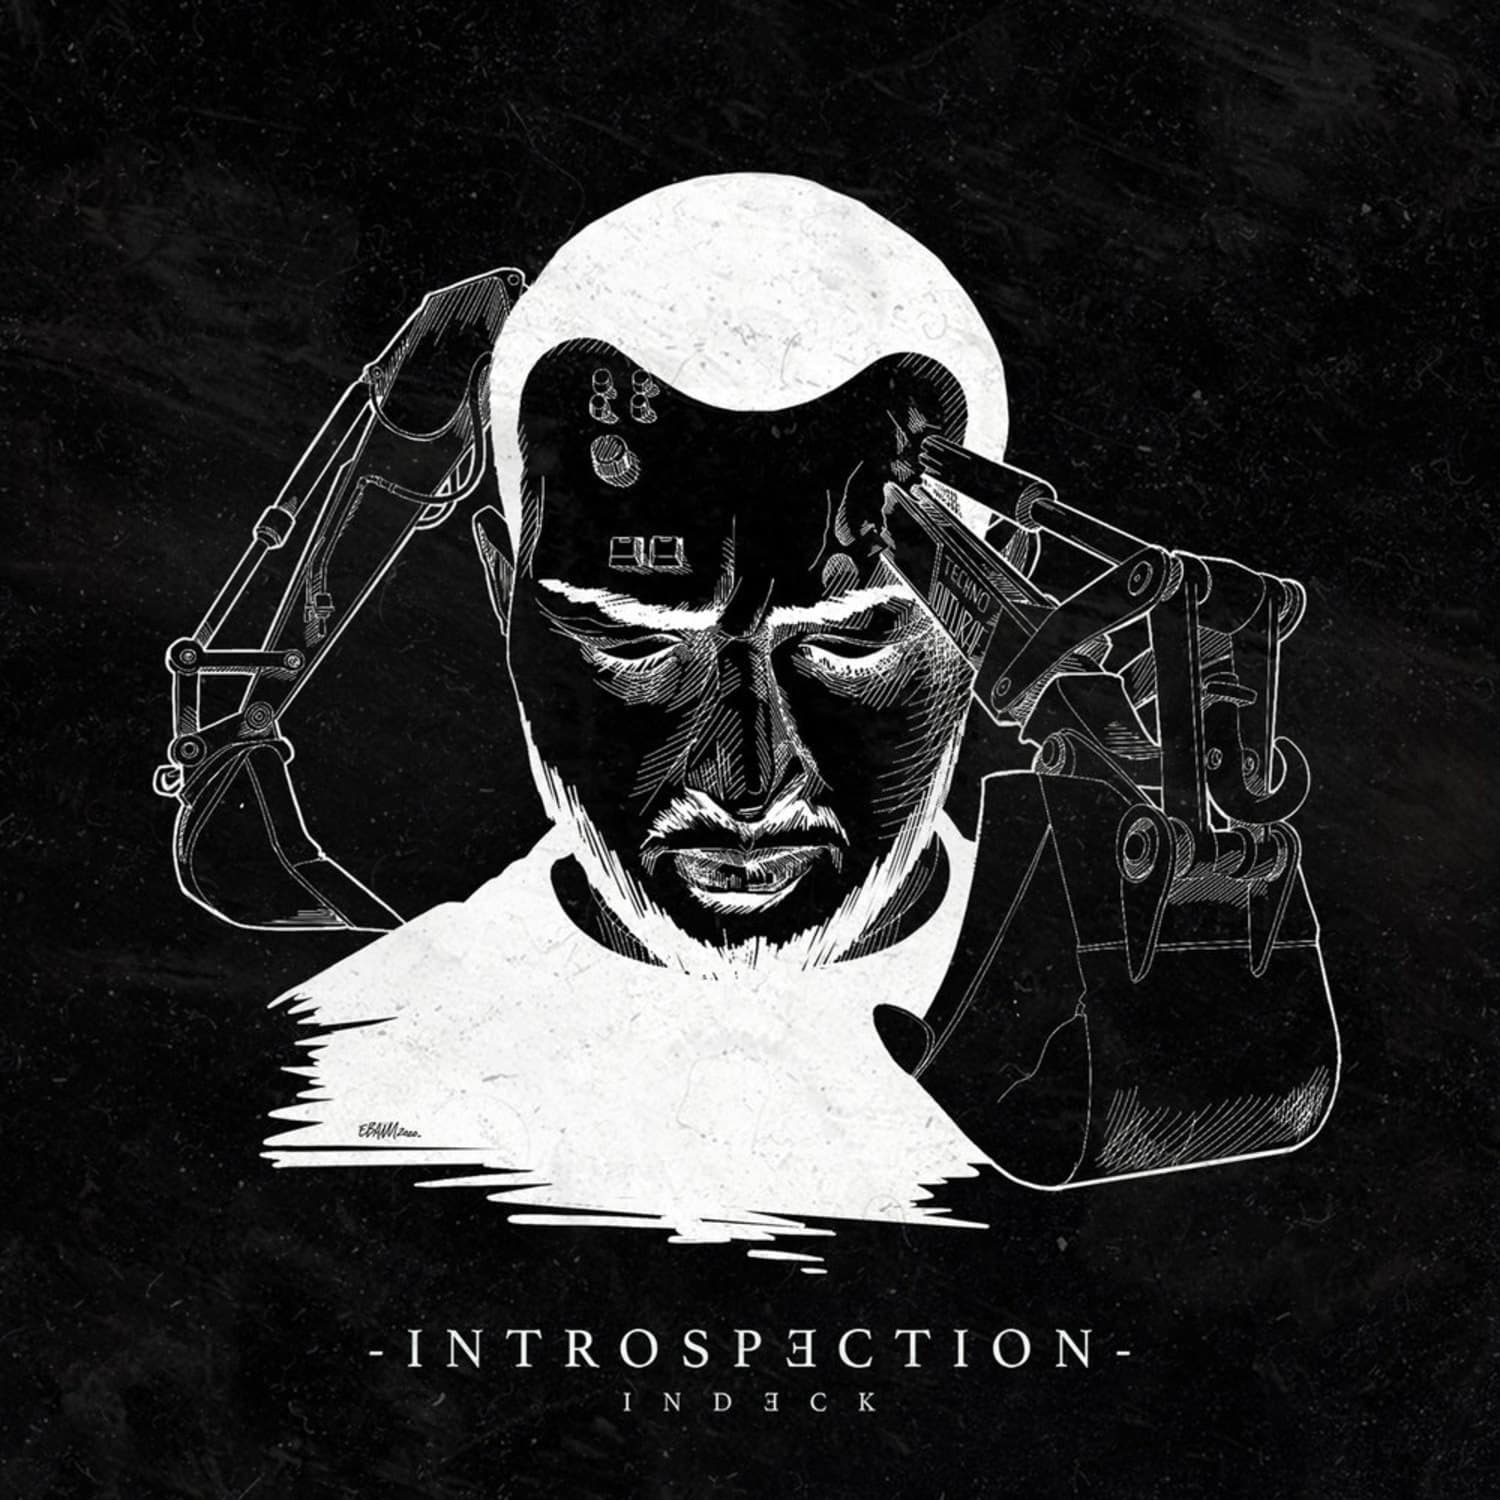 Indeck - INTROSPECTION